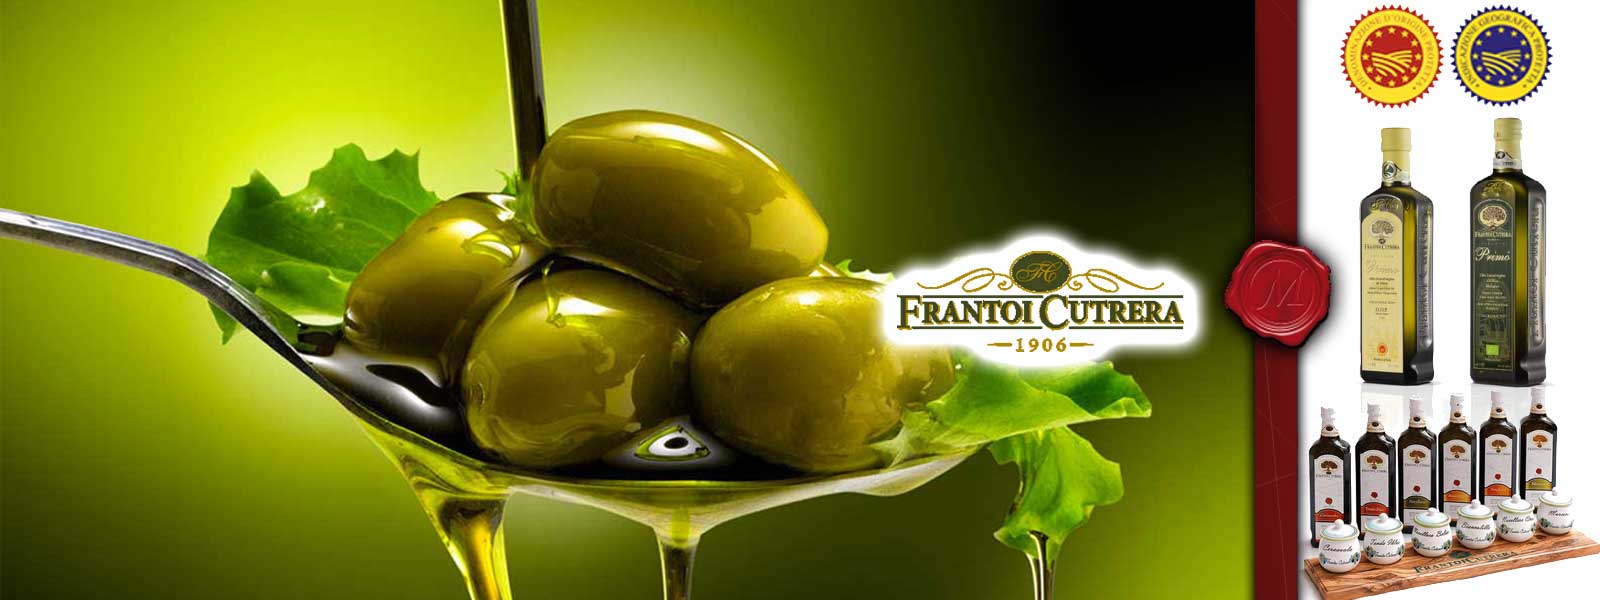 Olivovy olej od Frantoi Cutrera 